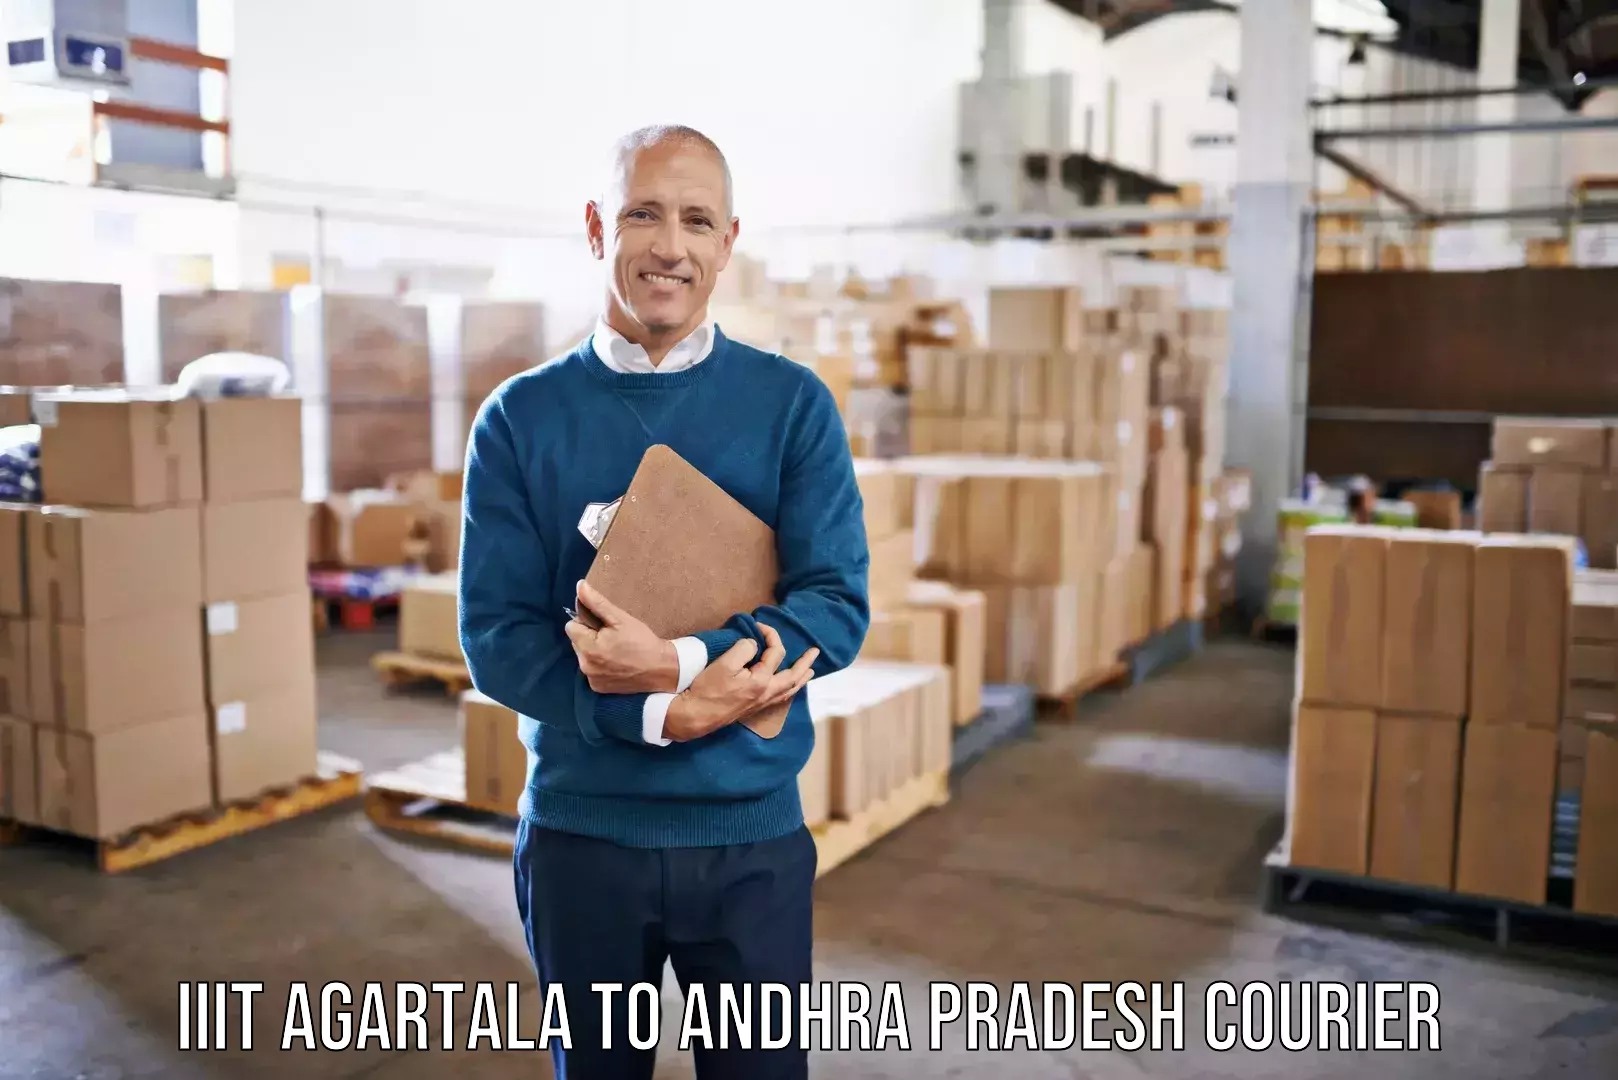 Furniture moving and handling IIIT Agartala to Allagadda